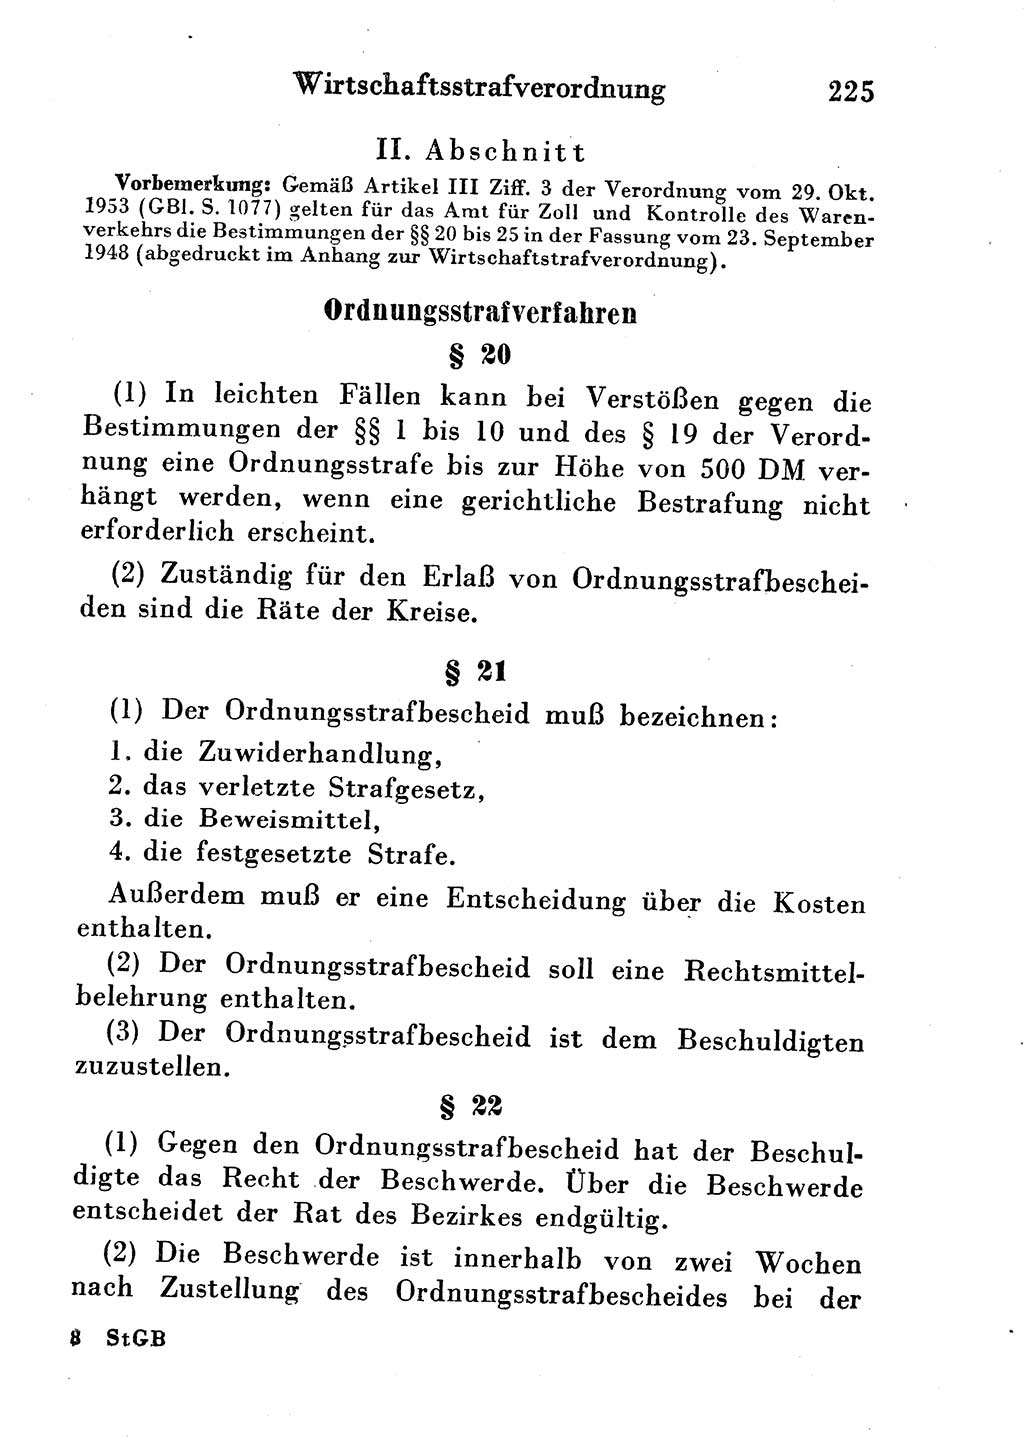 Strafgesetzbuch (StGB) und andere Strafgesetze [Deutsche Demokratische Republik (DDR)] 1954, Seite 225 (StGB Strafges. DDR 1954, S. 225)